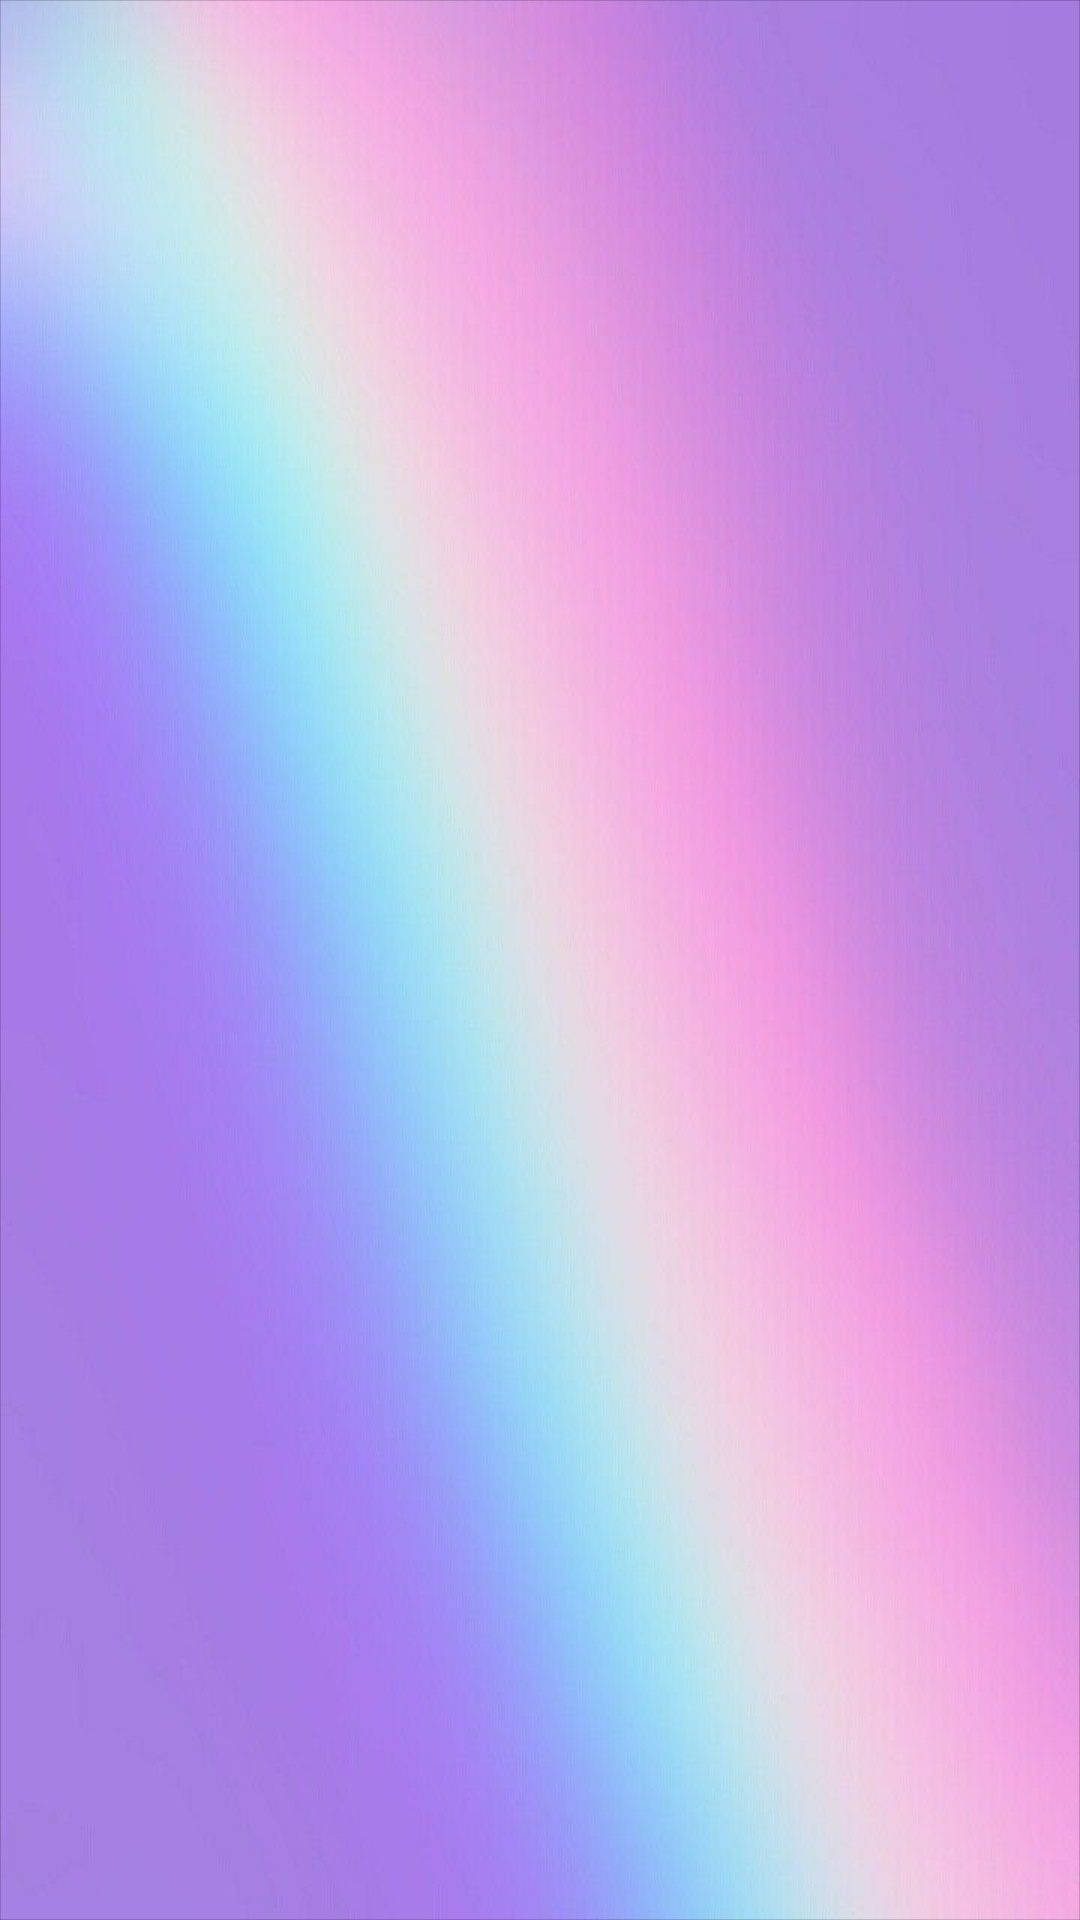 Holográficocon Lámina Arcoíris De Colores Para Iphone. Fondo de pantalla